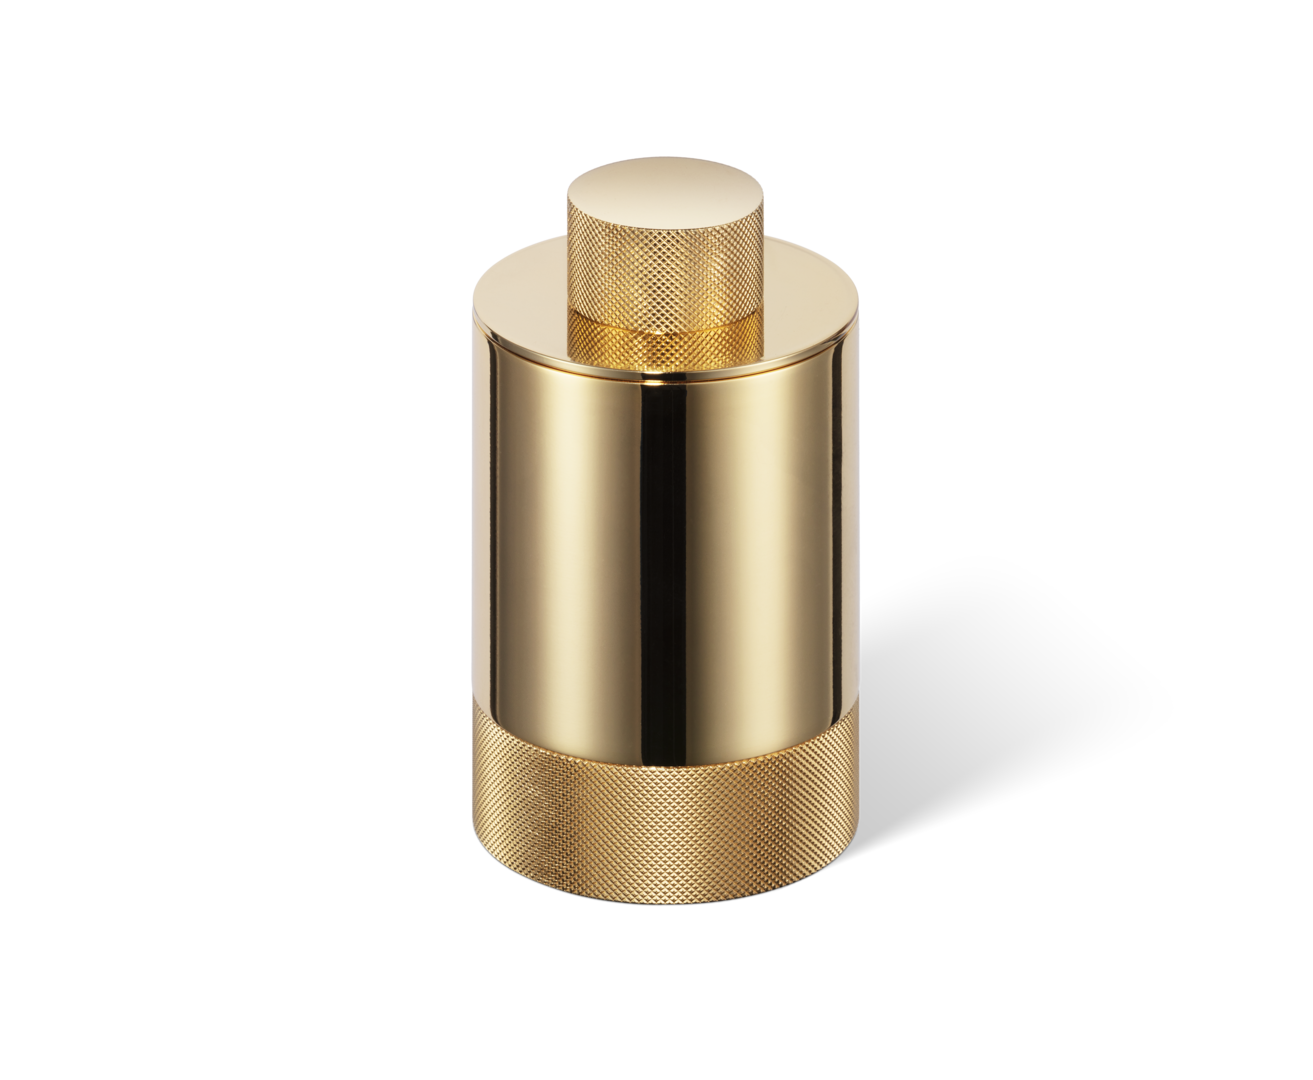 Luxuriöser Kosmetikpadbehälter und Zahnbürstenhalter in 24 Karat Gold für ein modernes Bad-Design. Kaufe jetzt bei DasFeineBad.